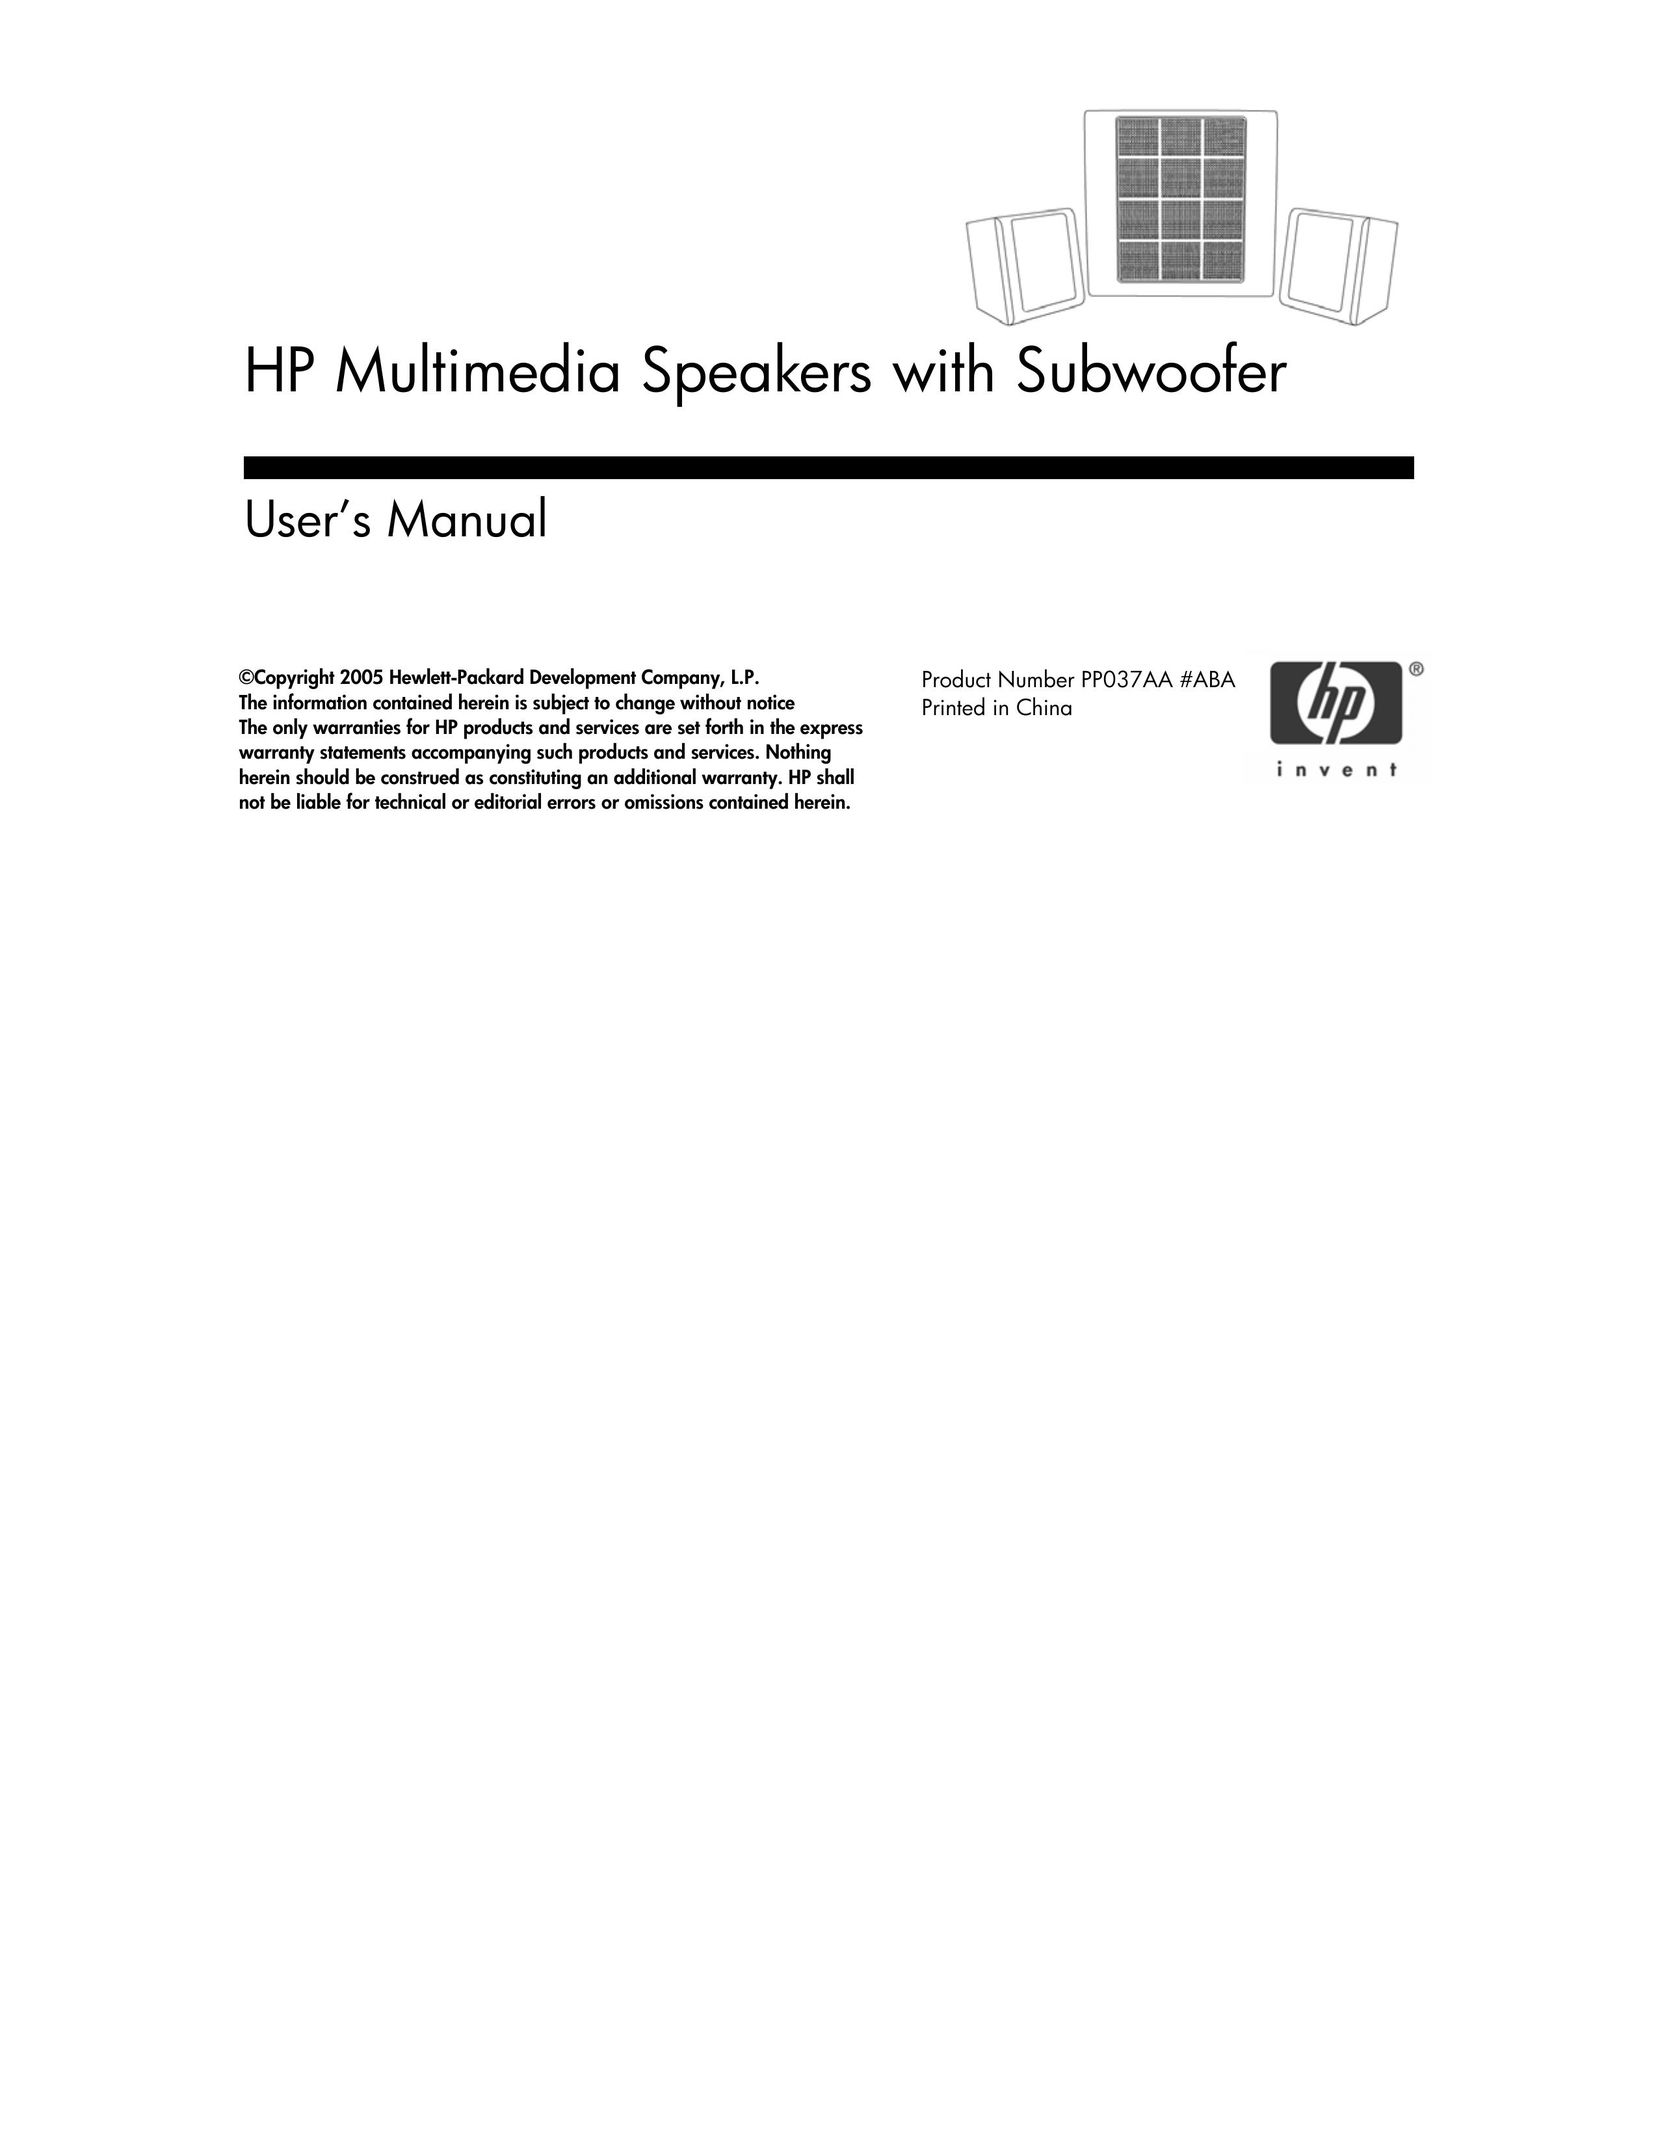 HP (Hewlett-Packard) PP037AA #ABA Speaker System User Manual